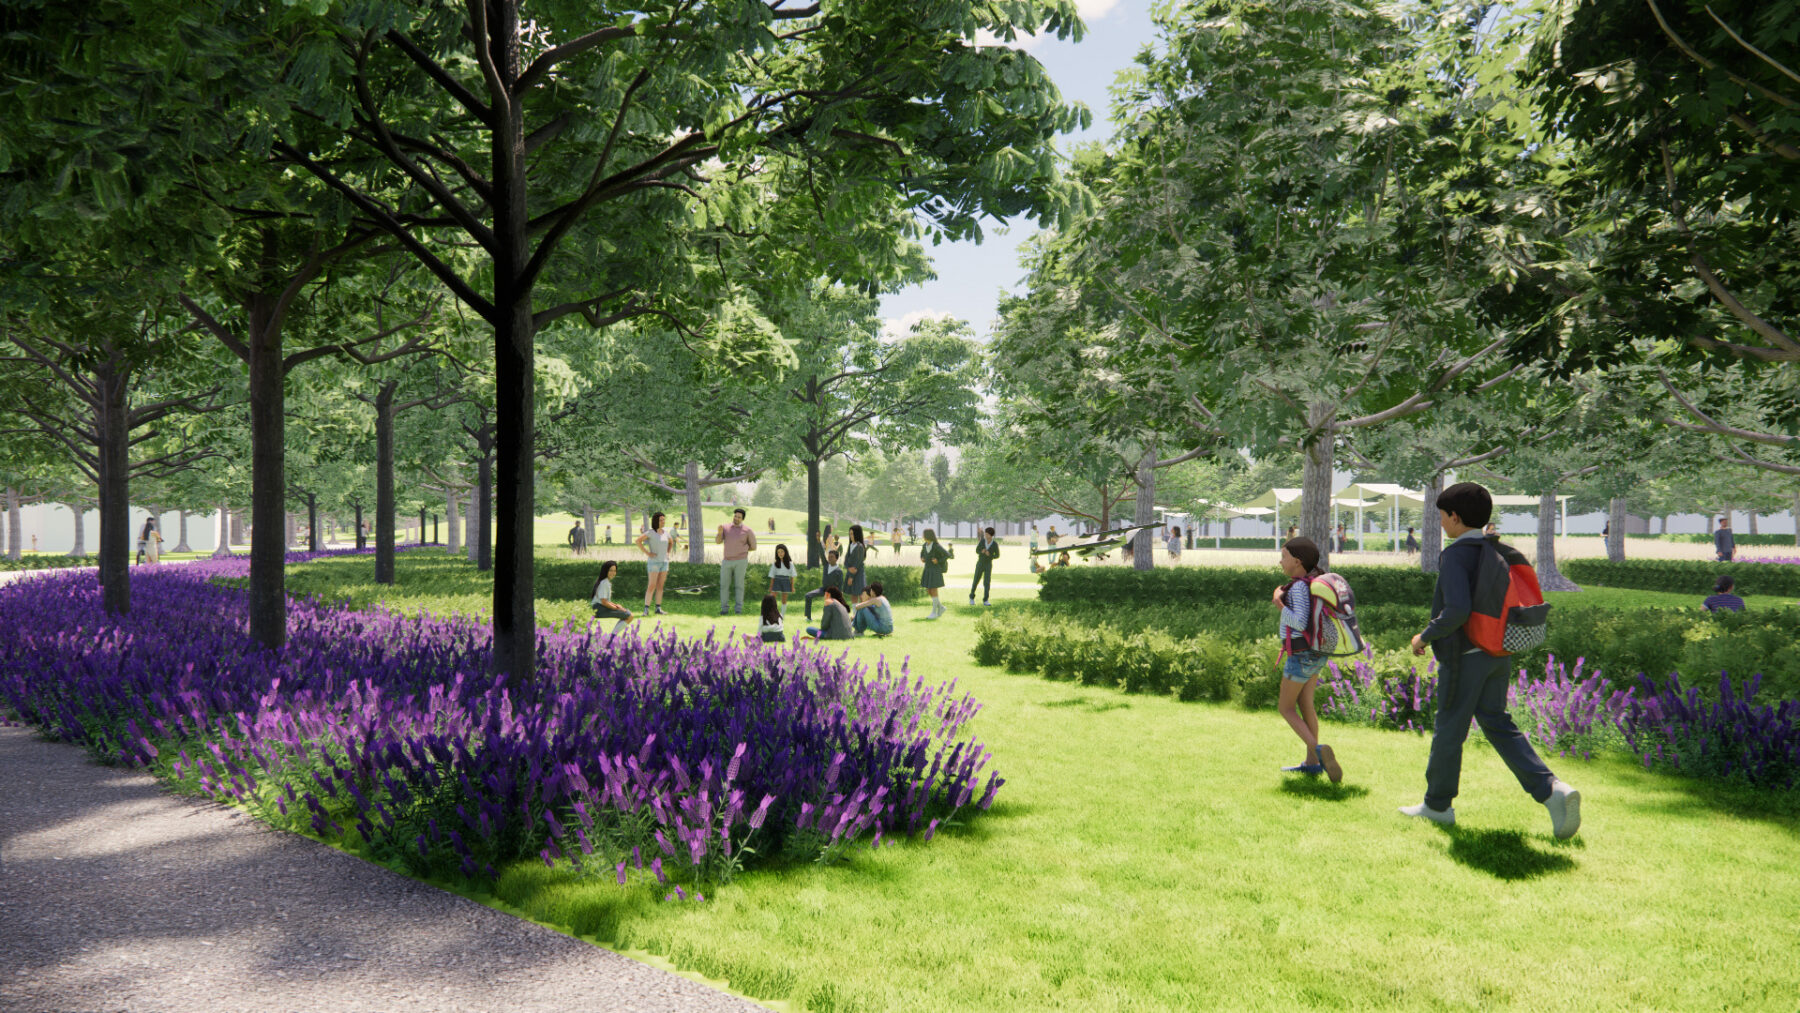 rendering of people walking through green spaces